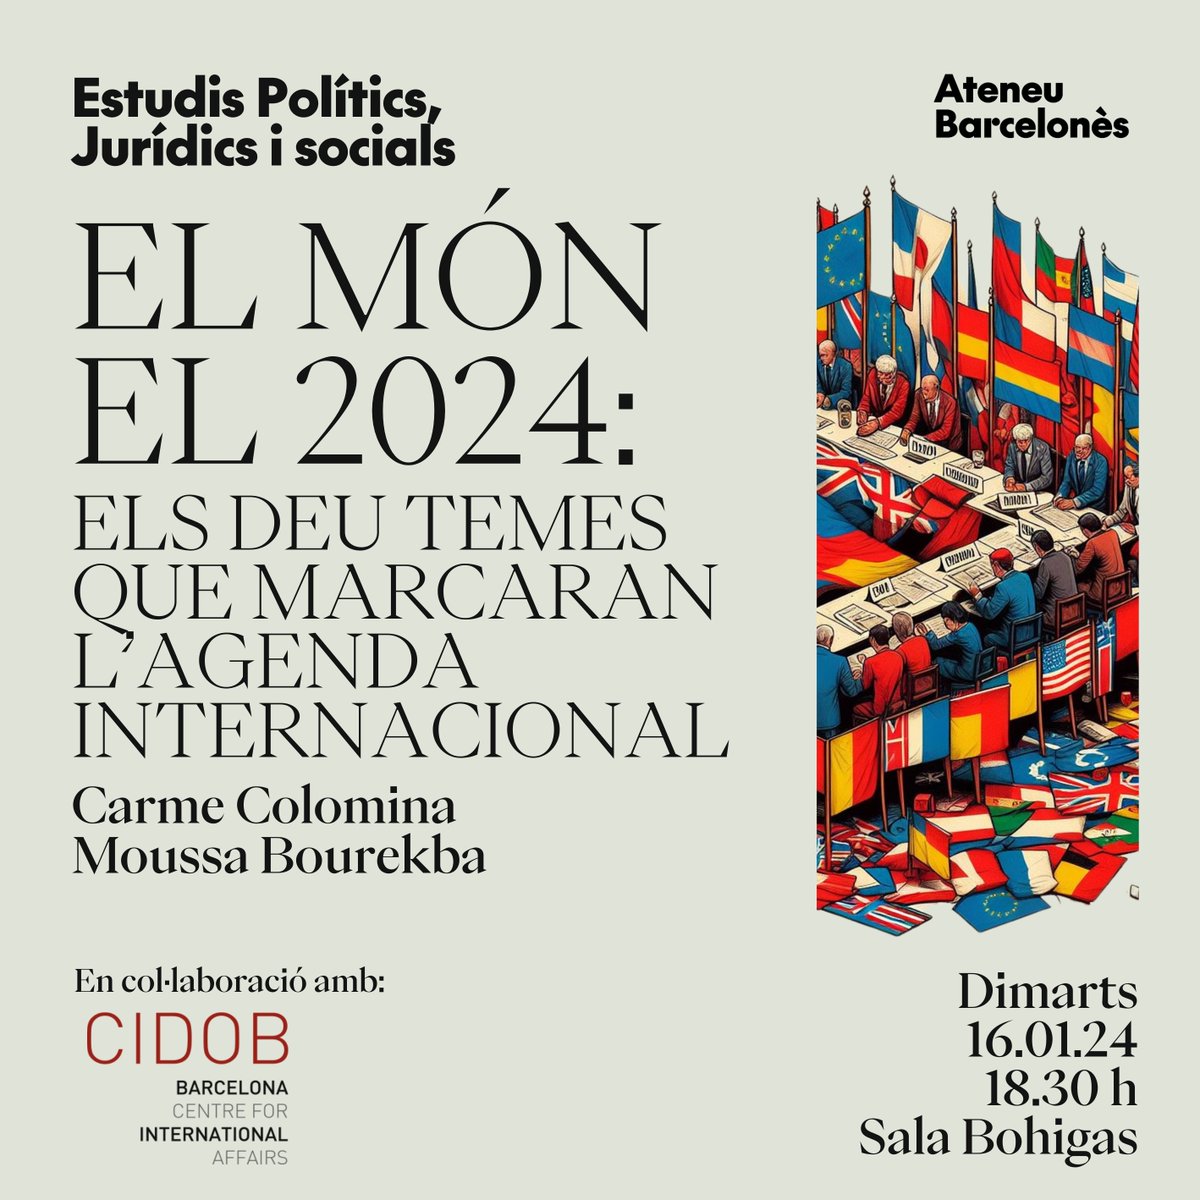 Els invesitagors del @CidobBarcelona @Carmecolomina i @MoussaBk, ens acompanyaran el proper dimarts 16 de gener per analitzar els deu temes que marcaran l'agenda internacional el 2024. ⌚️ 18.30 h. Si no n'heu tingut prou amb un 2023 políticament intens... prepareu-vos pel 2024!